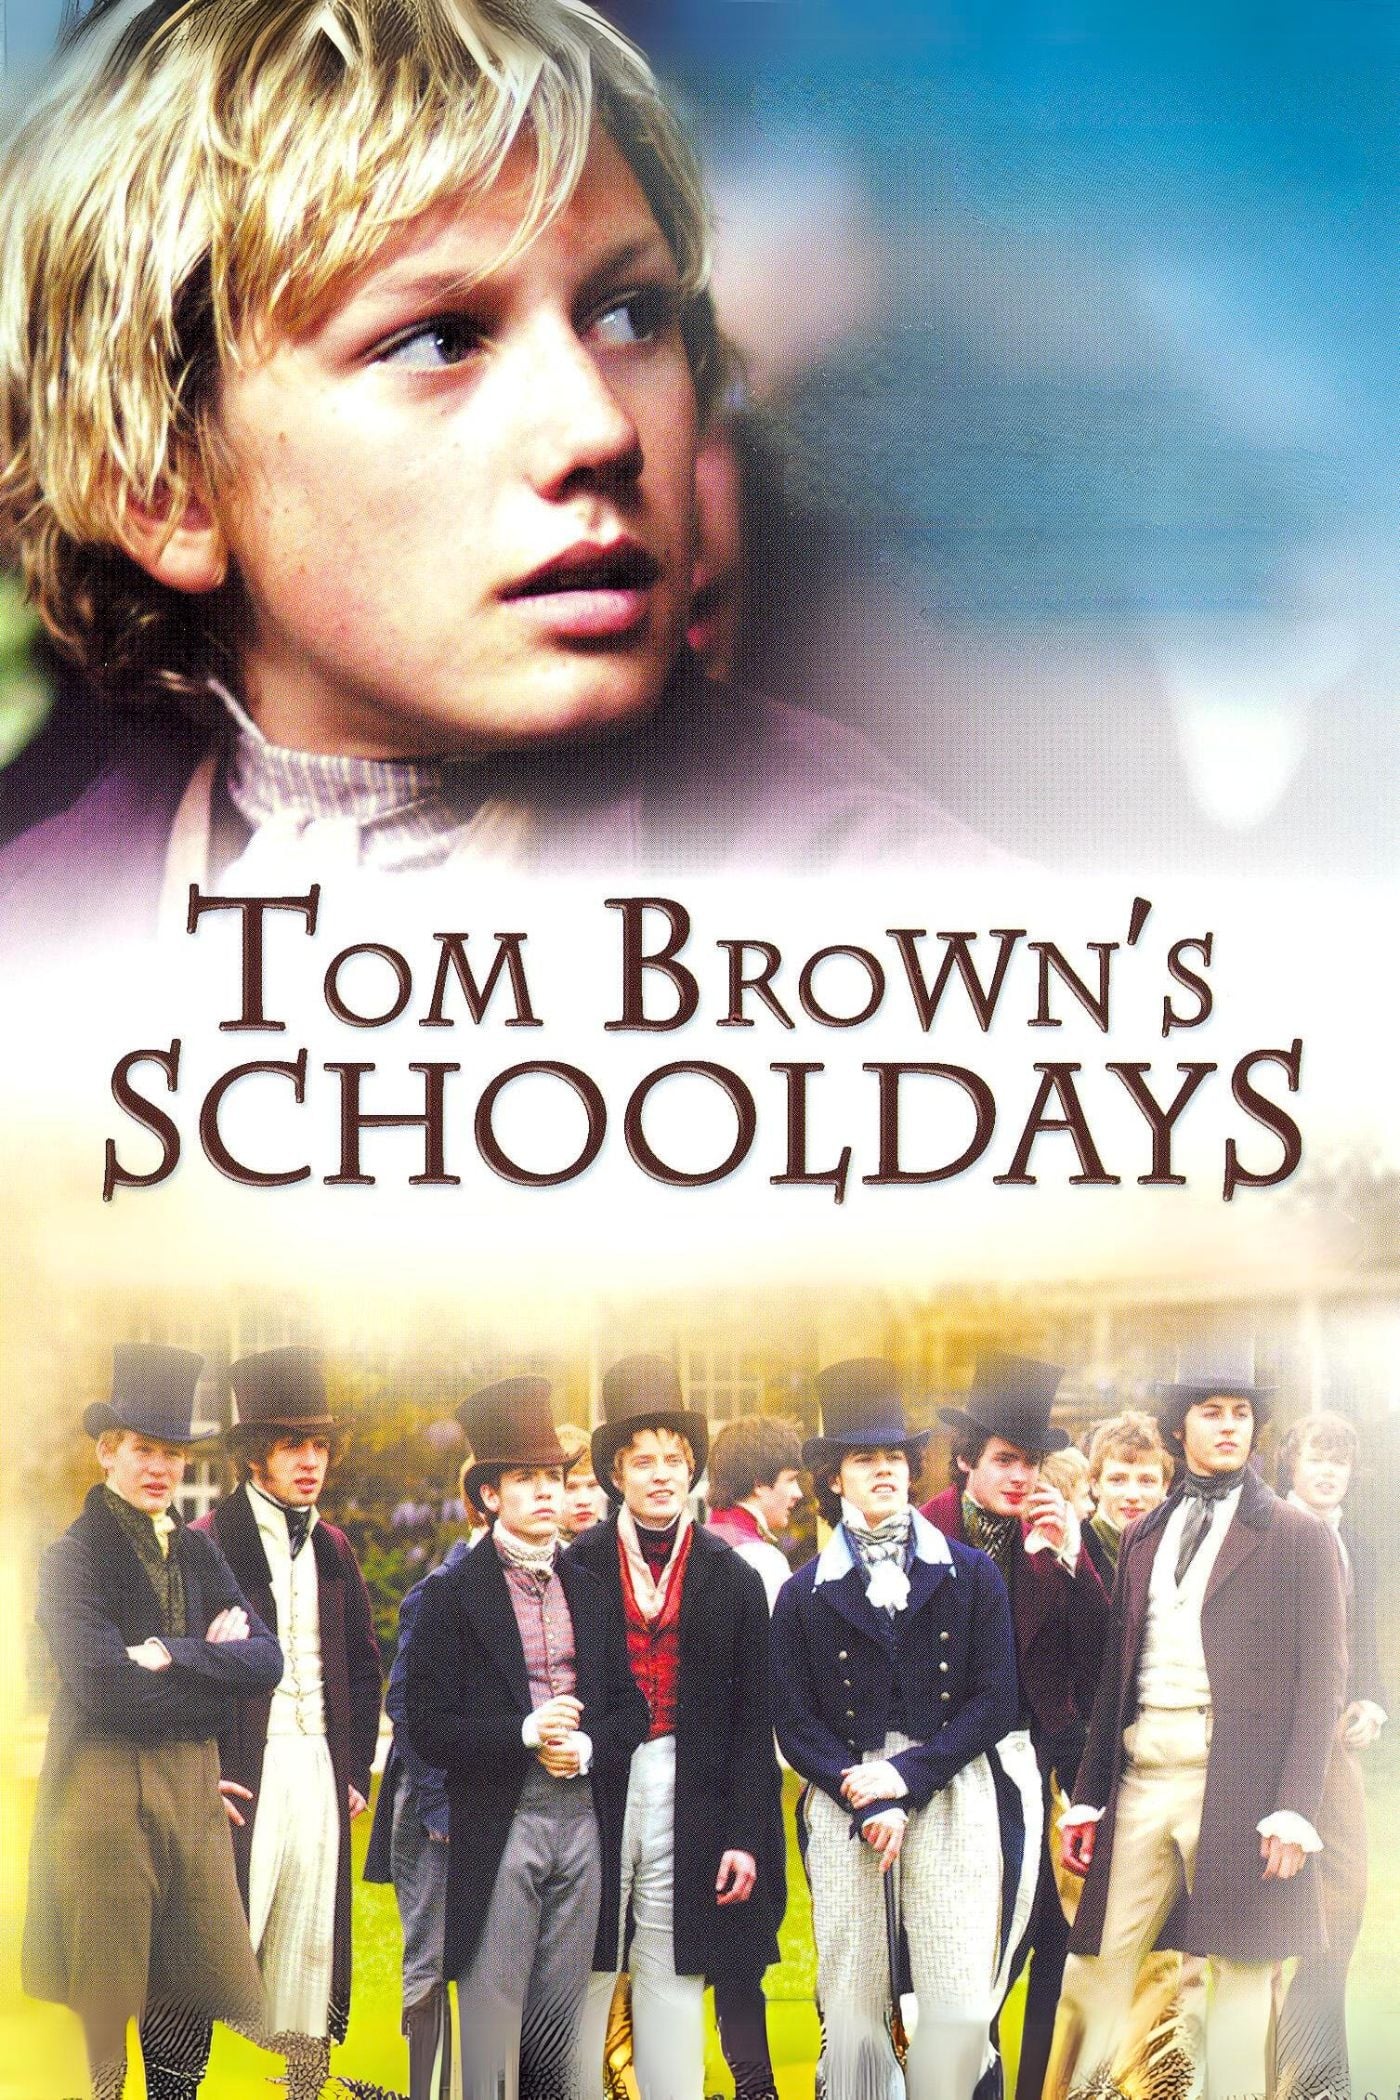 Tom Brown's Schooldays (2005)